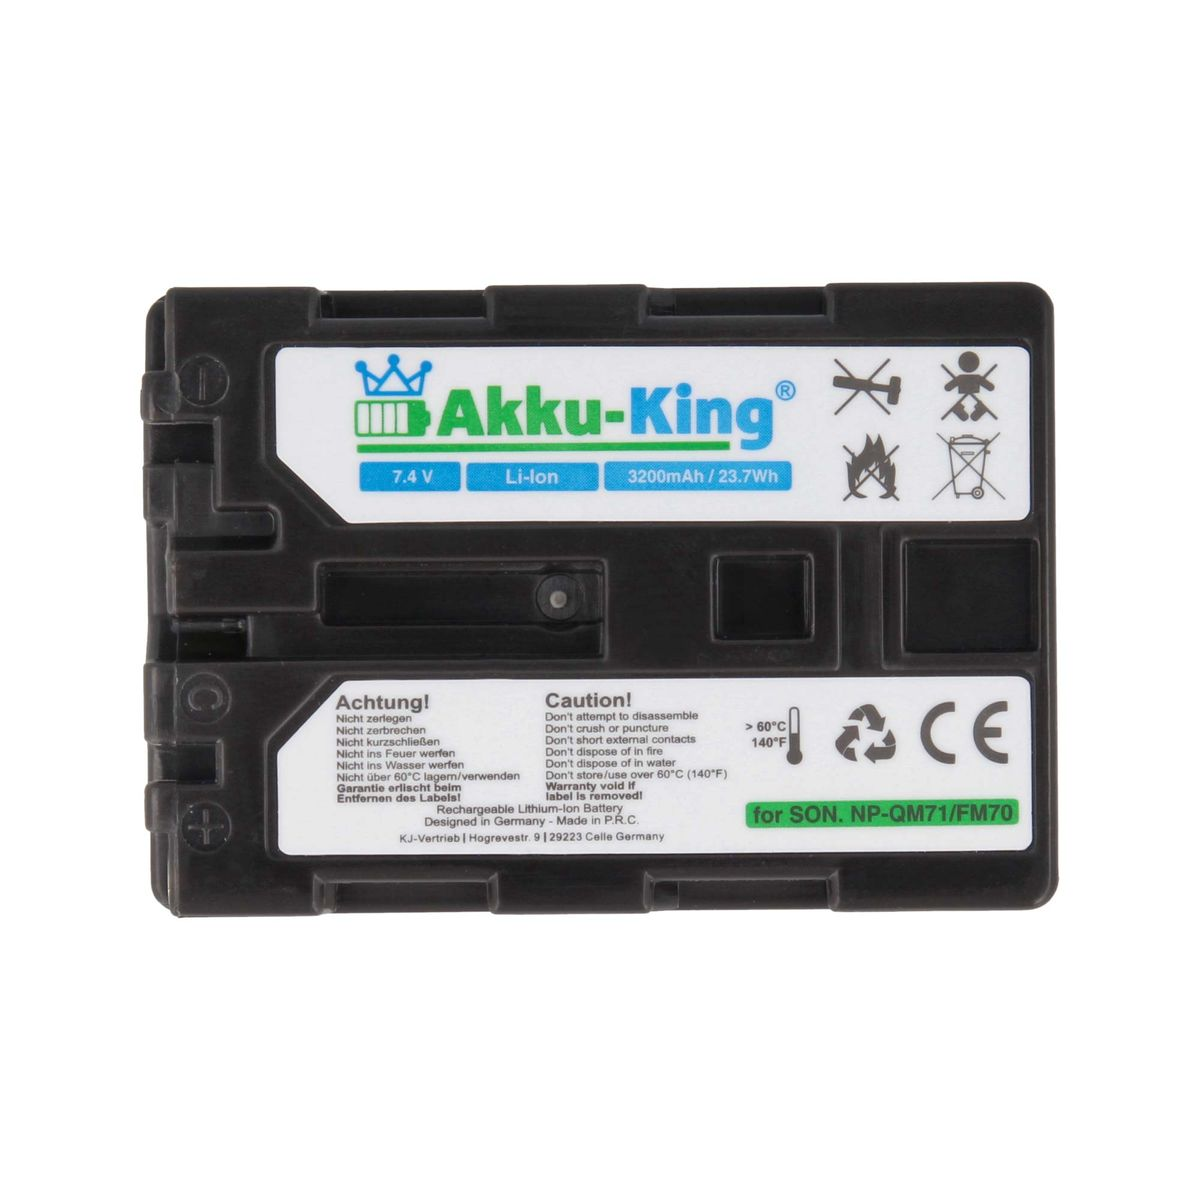 NP-QM51 kompatibel mit AKKU-KING Volt, 7.4 Akku Li-Ion Sony Kamera-Akku, 3200mAh